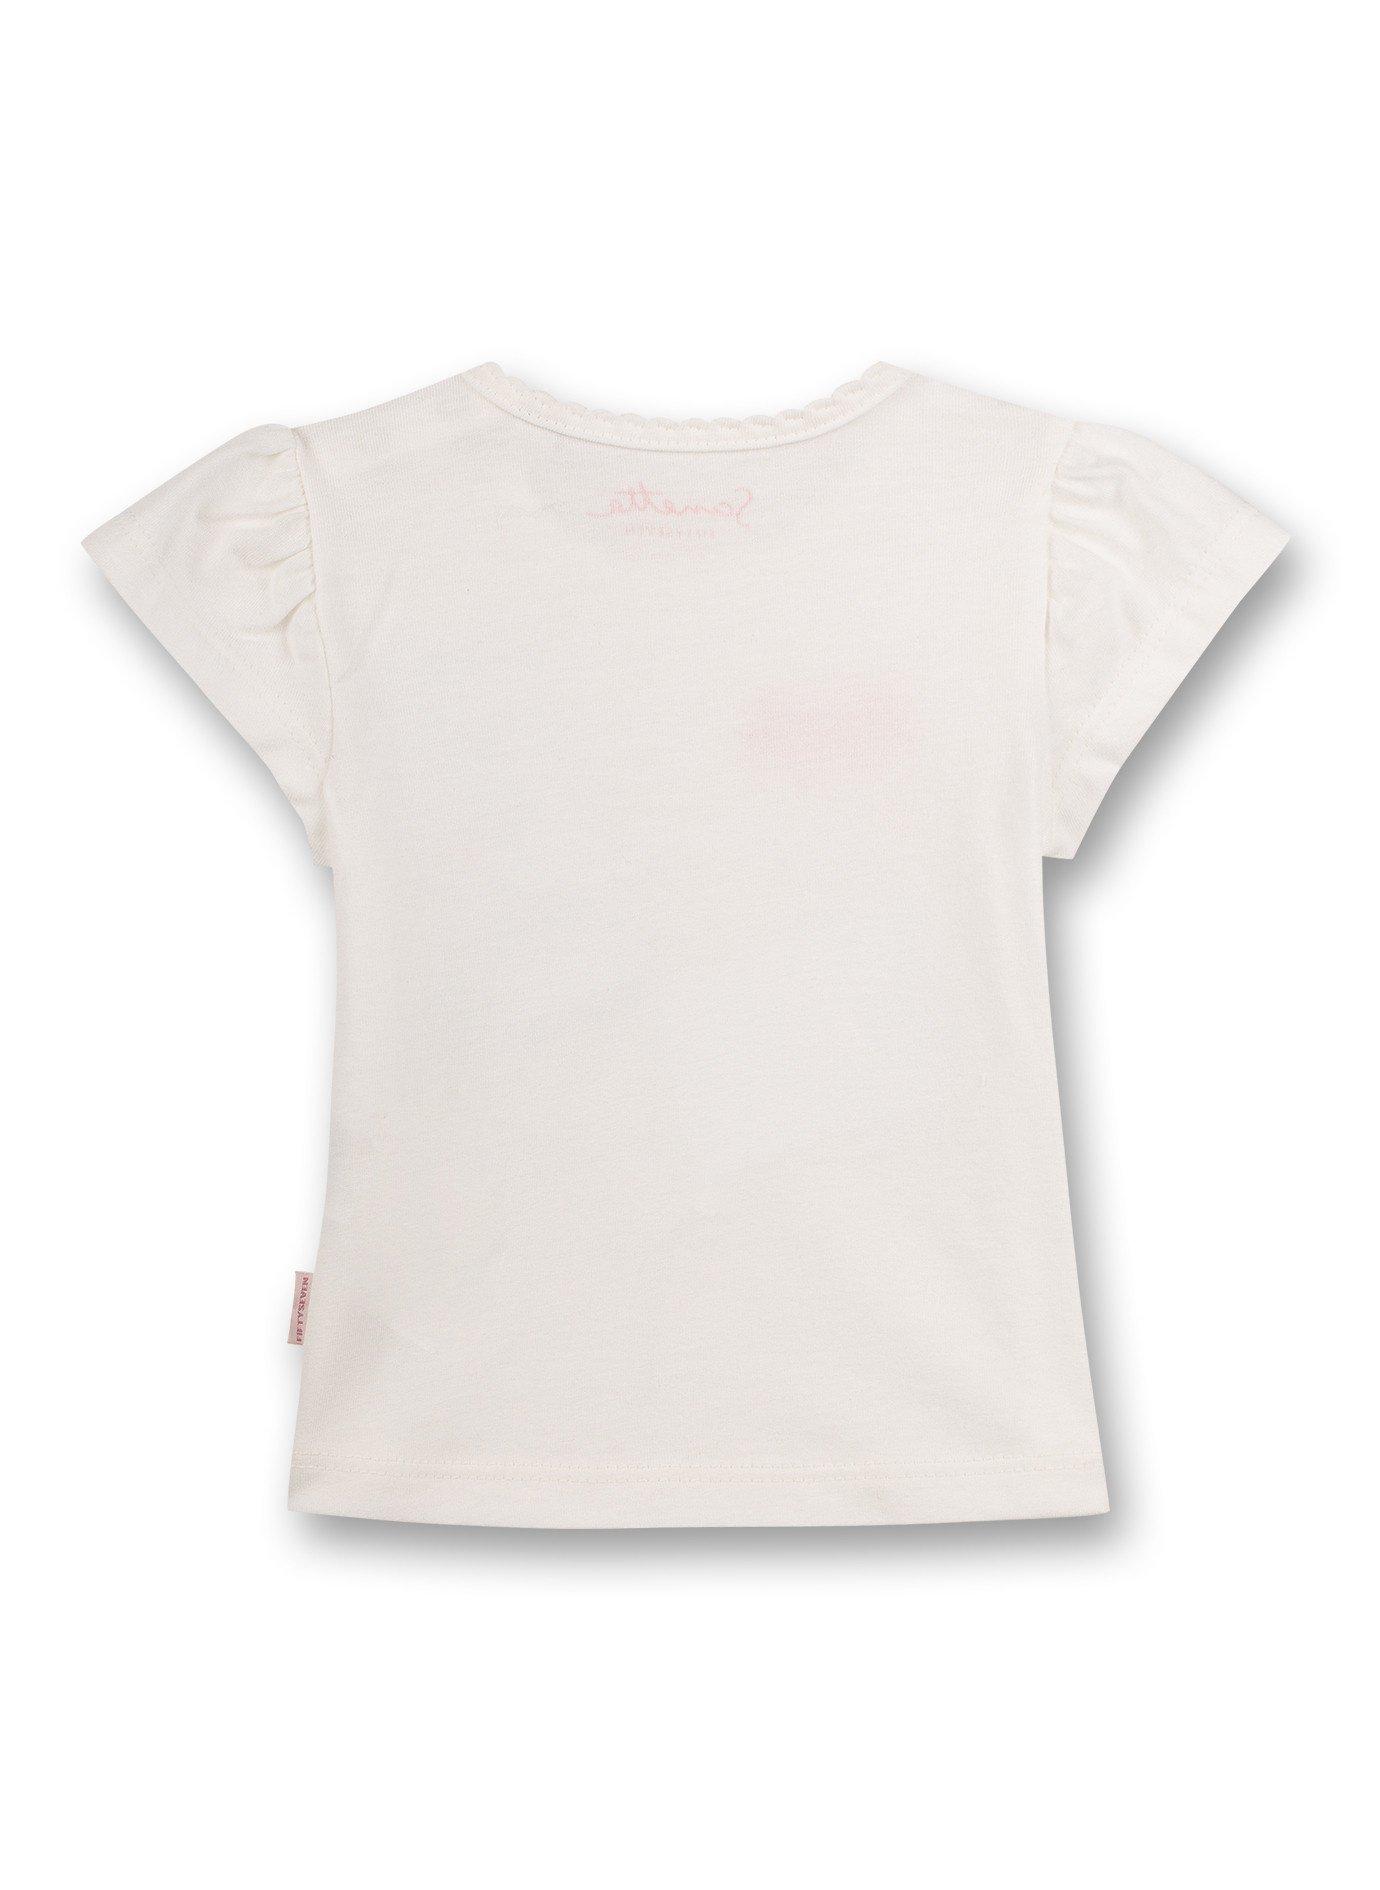 Sanetta Fiftyseven  Baby Mädchen T-Shirt Free Bird 